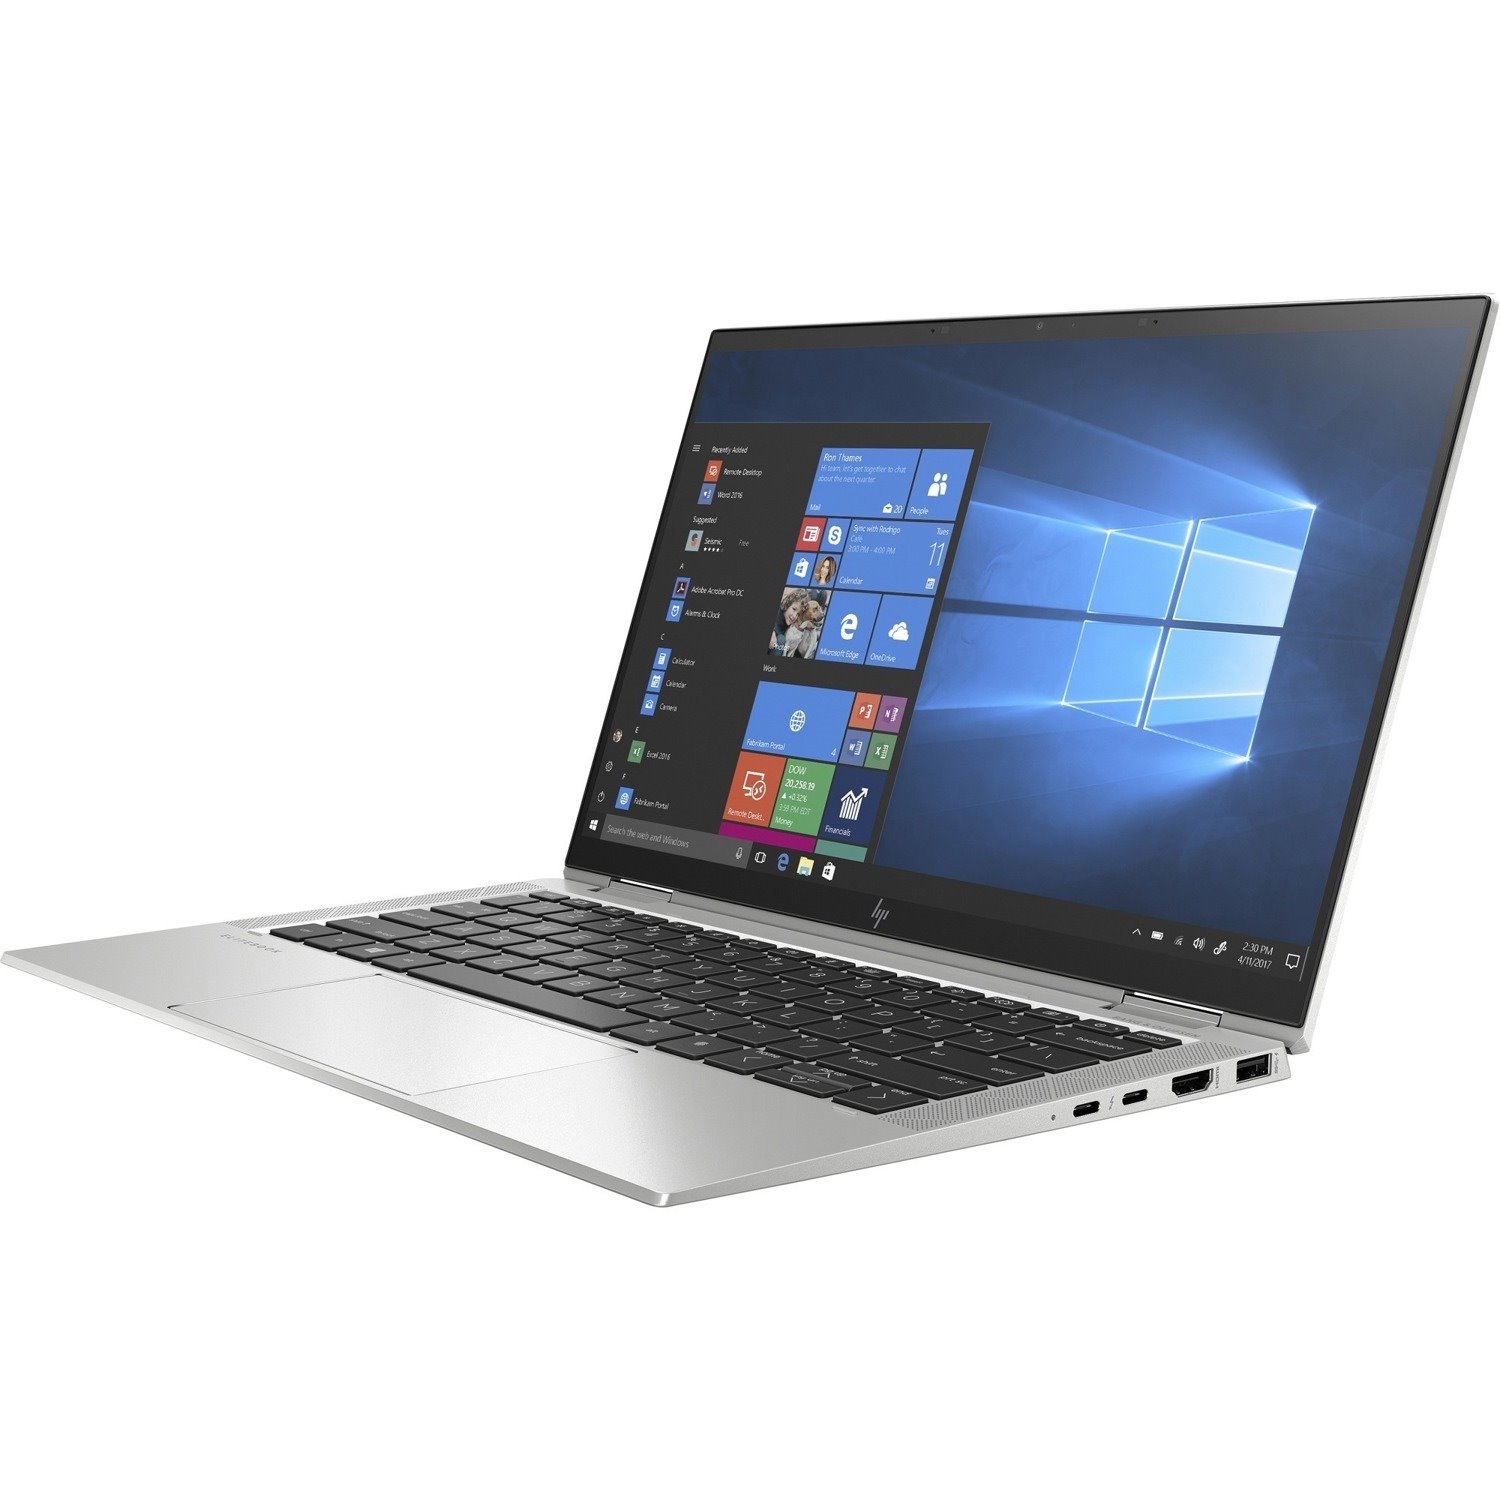 HP EliteBook x360 1030 G7 13.3" Touchscreen Convertible 2 in 1 Notebook - Intel Core i7 10th Gen i7-10610U Quad-core (4 Core) 1.80 GHz - 16 GB Total RAM - 256 GB SSD